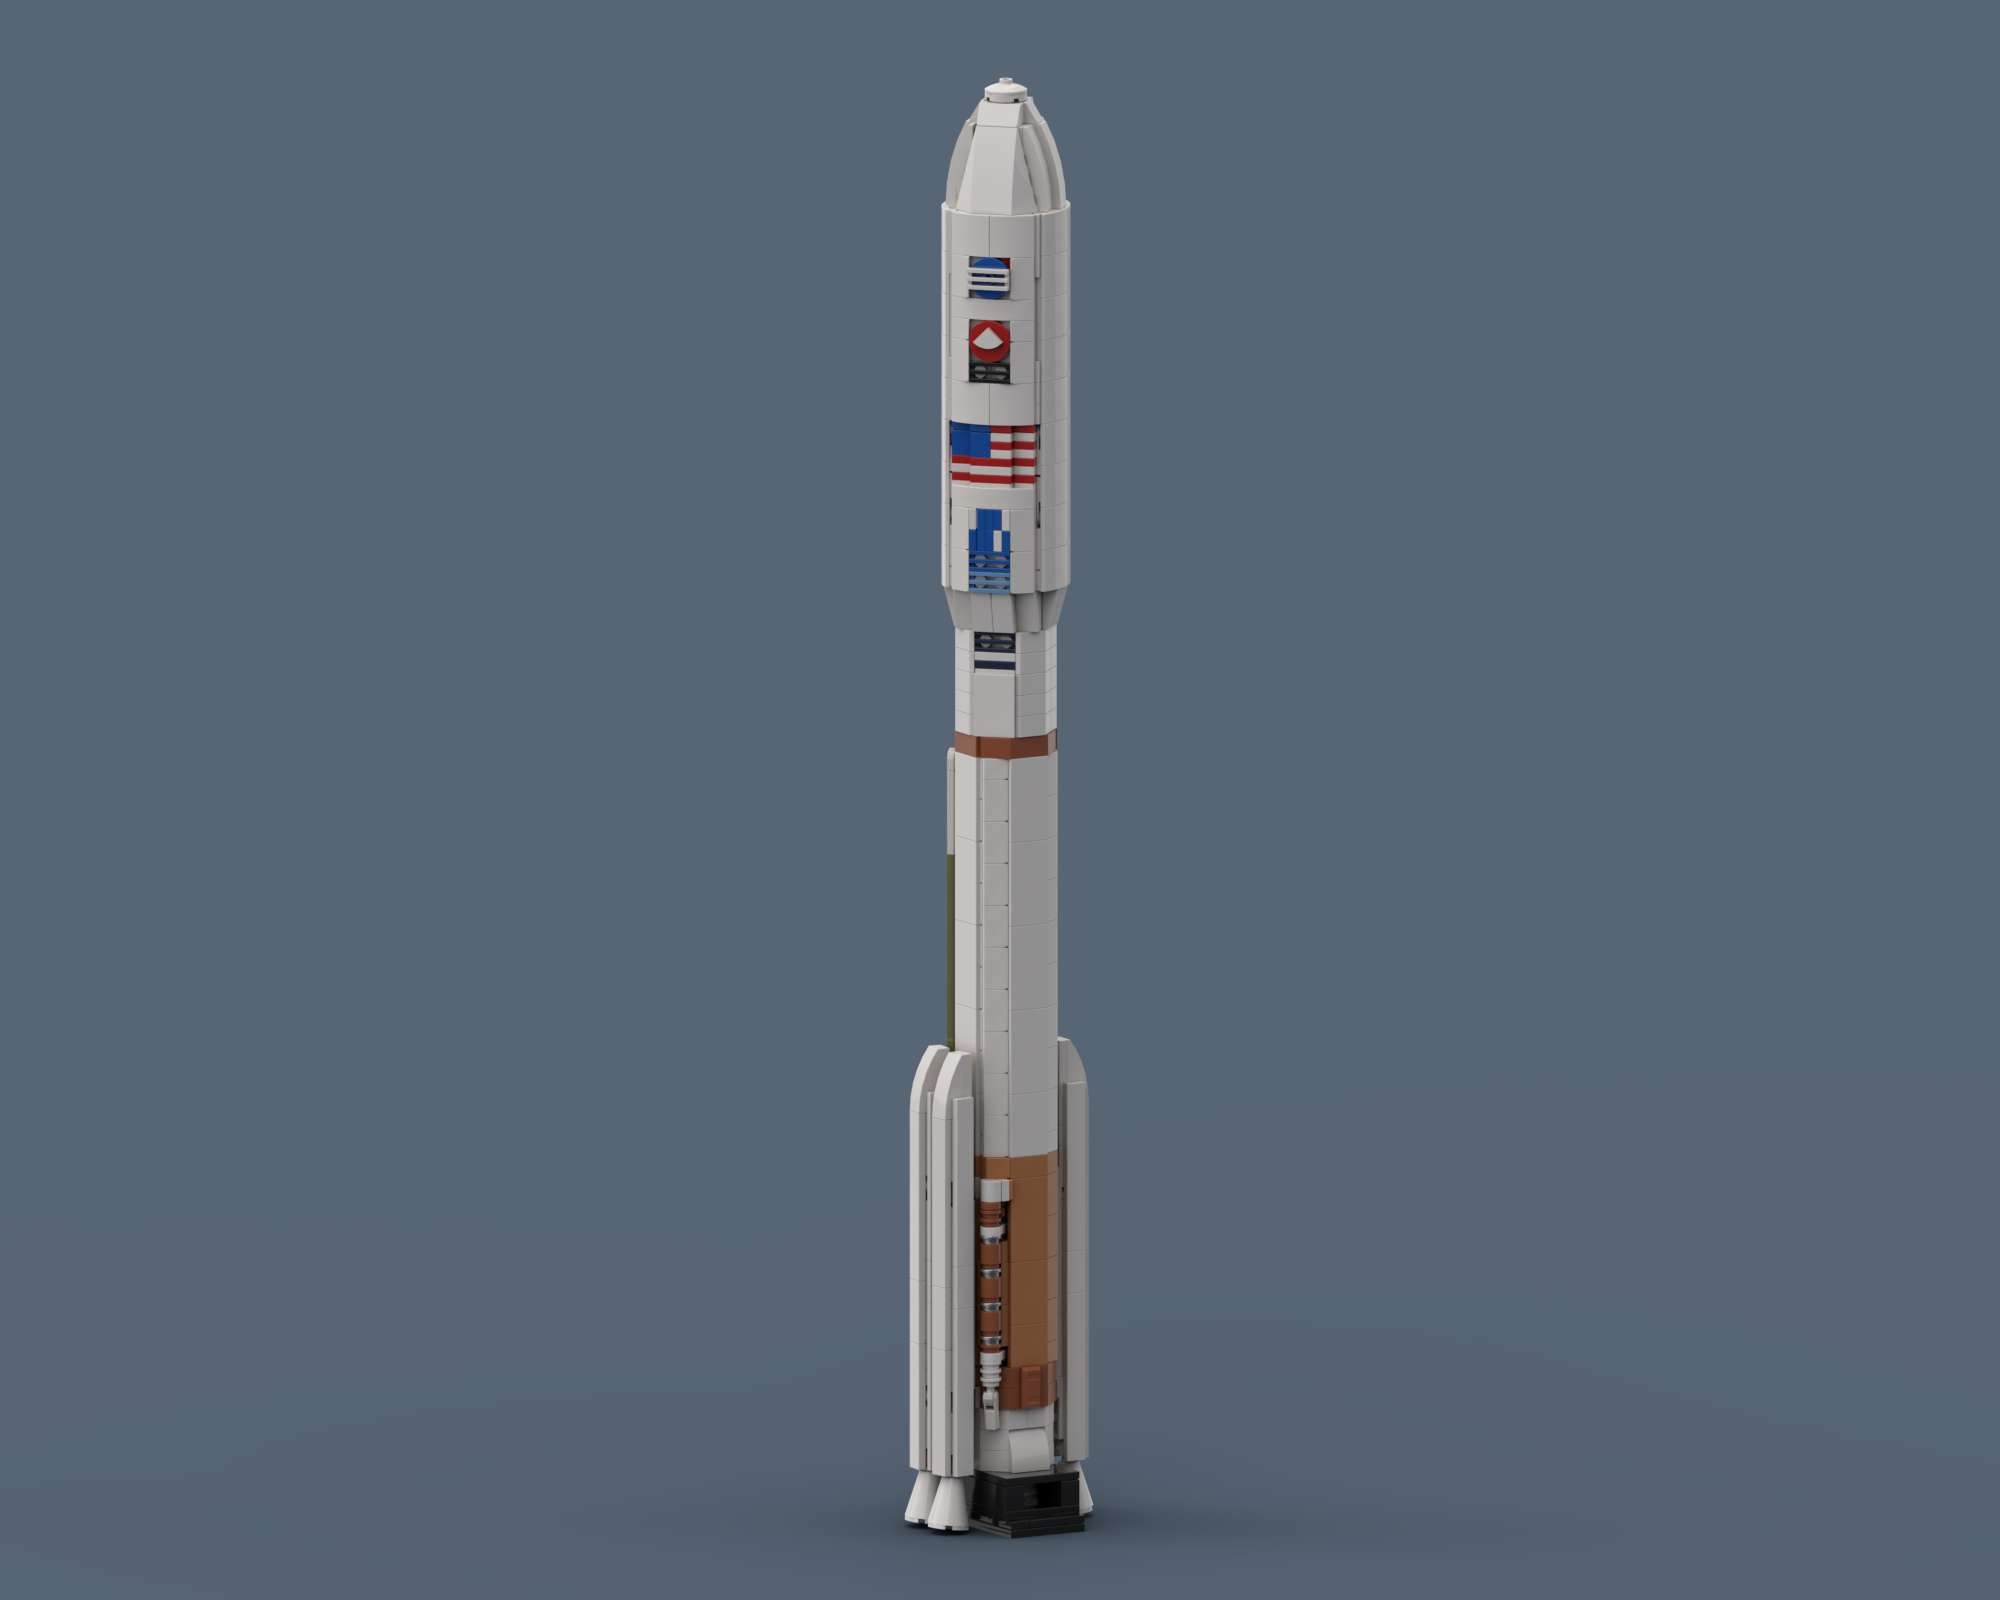 Atlas V 541 Mars 2020